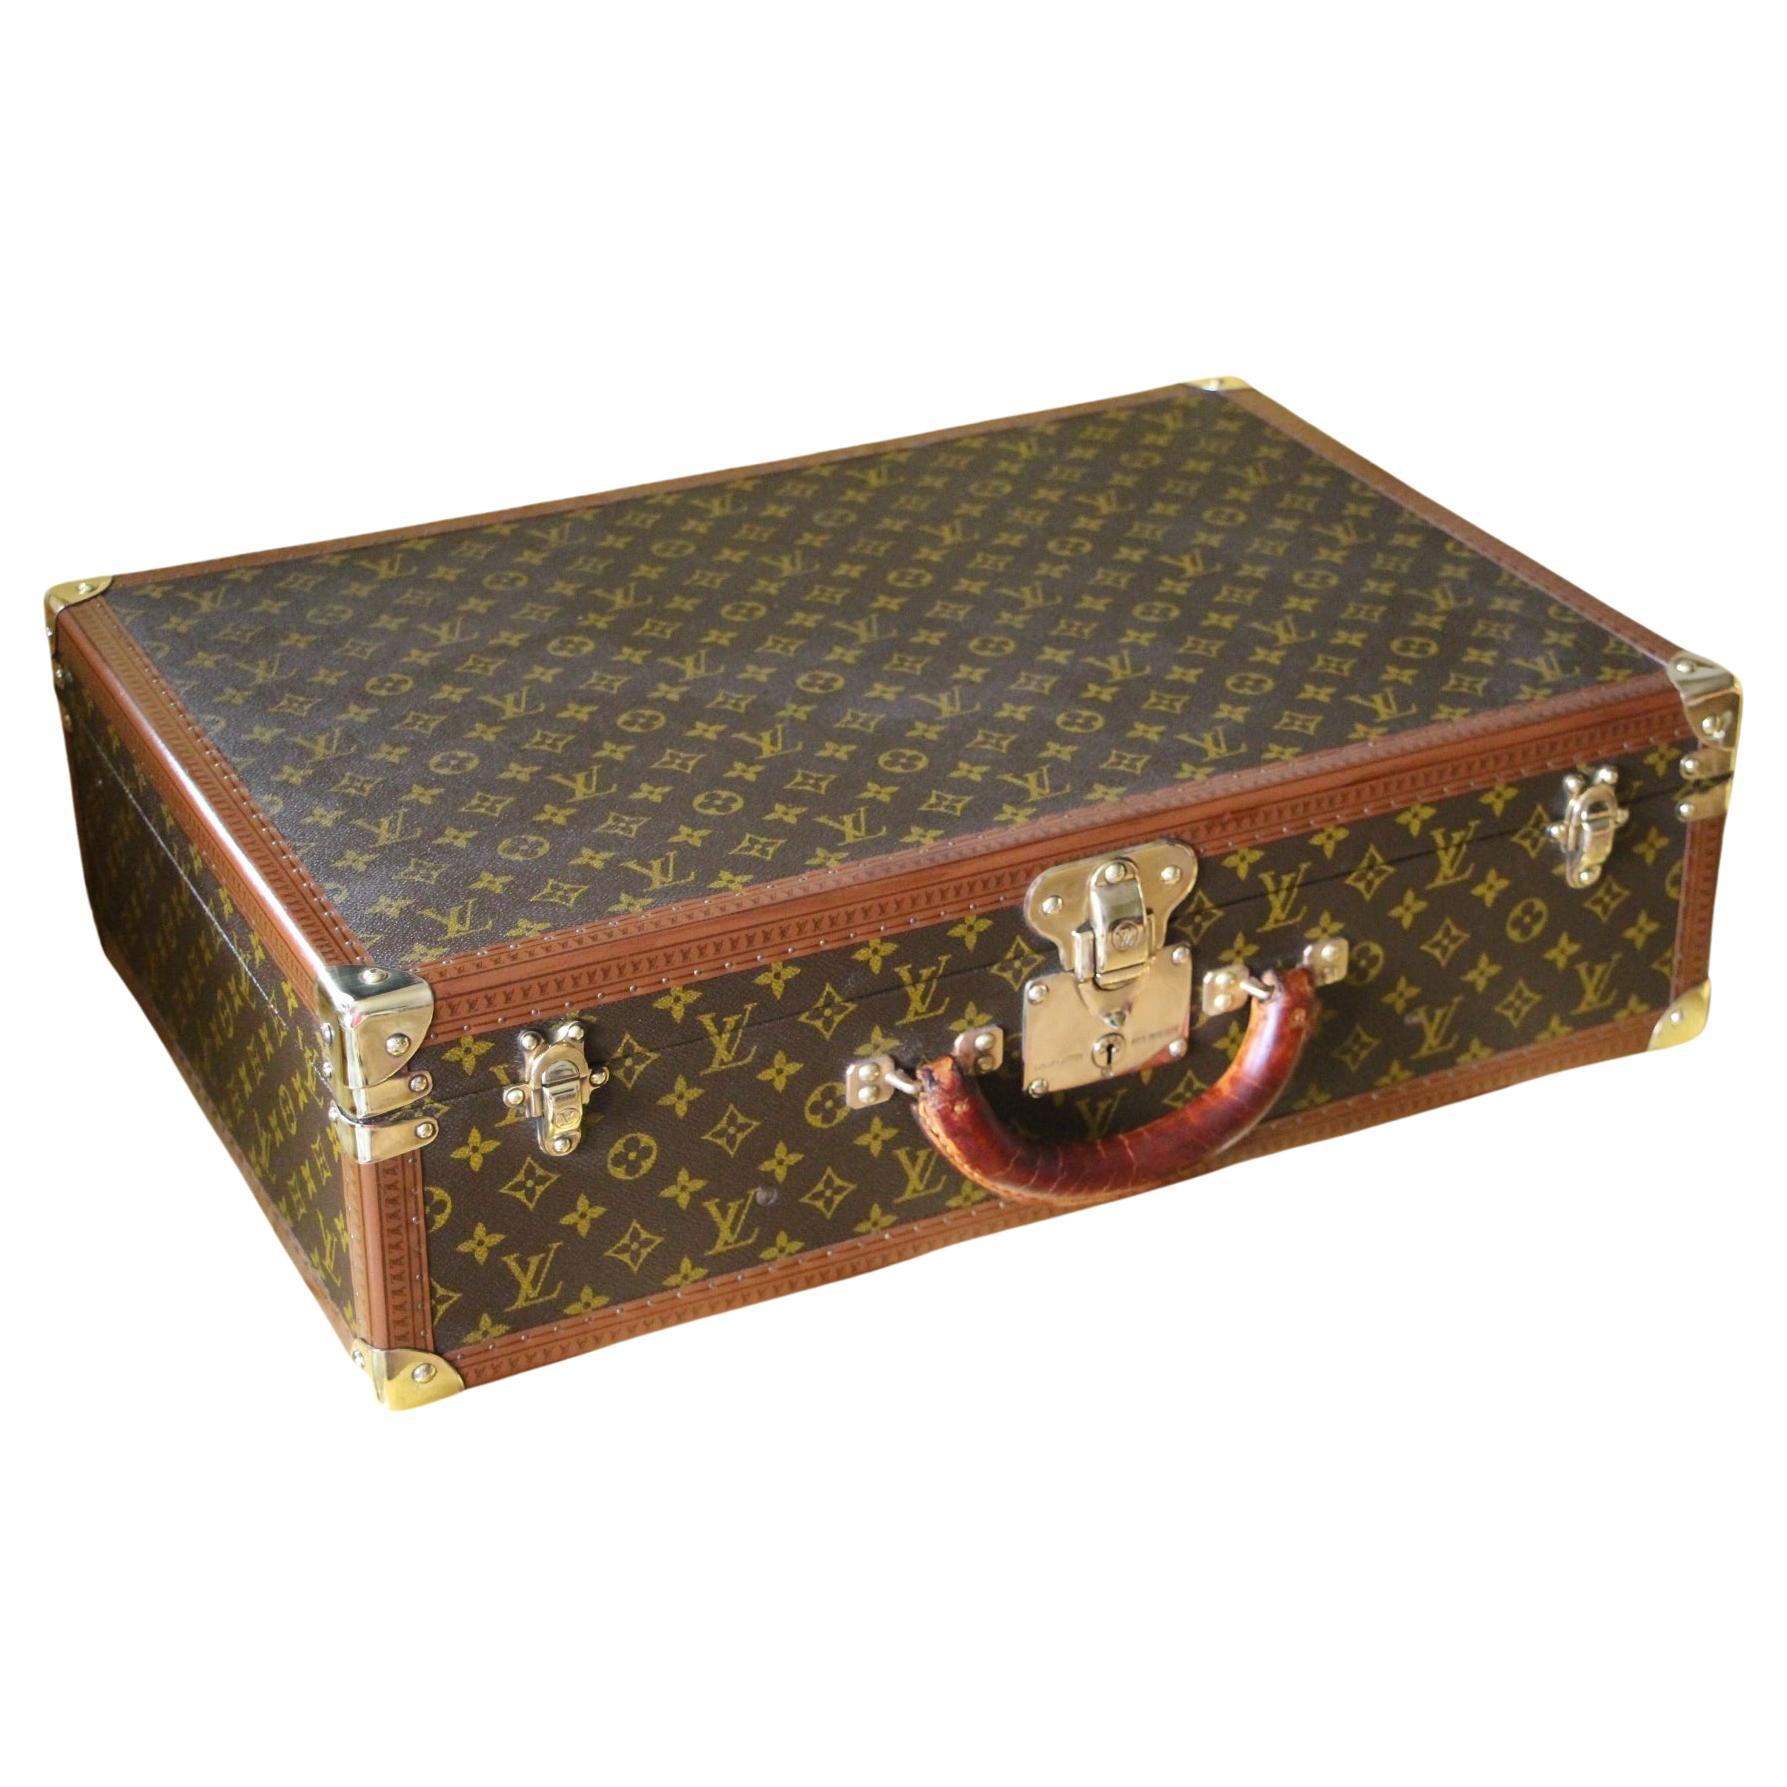 1980s Louis Vuitton Suitcase 60 cm, Louis Vuitton Trunk